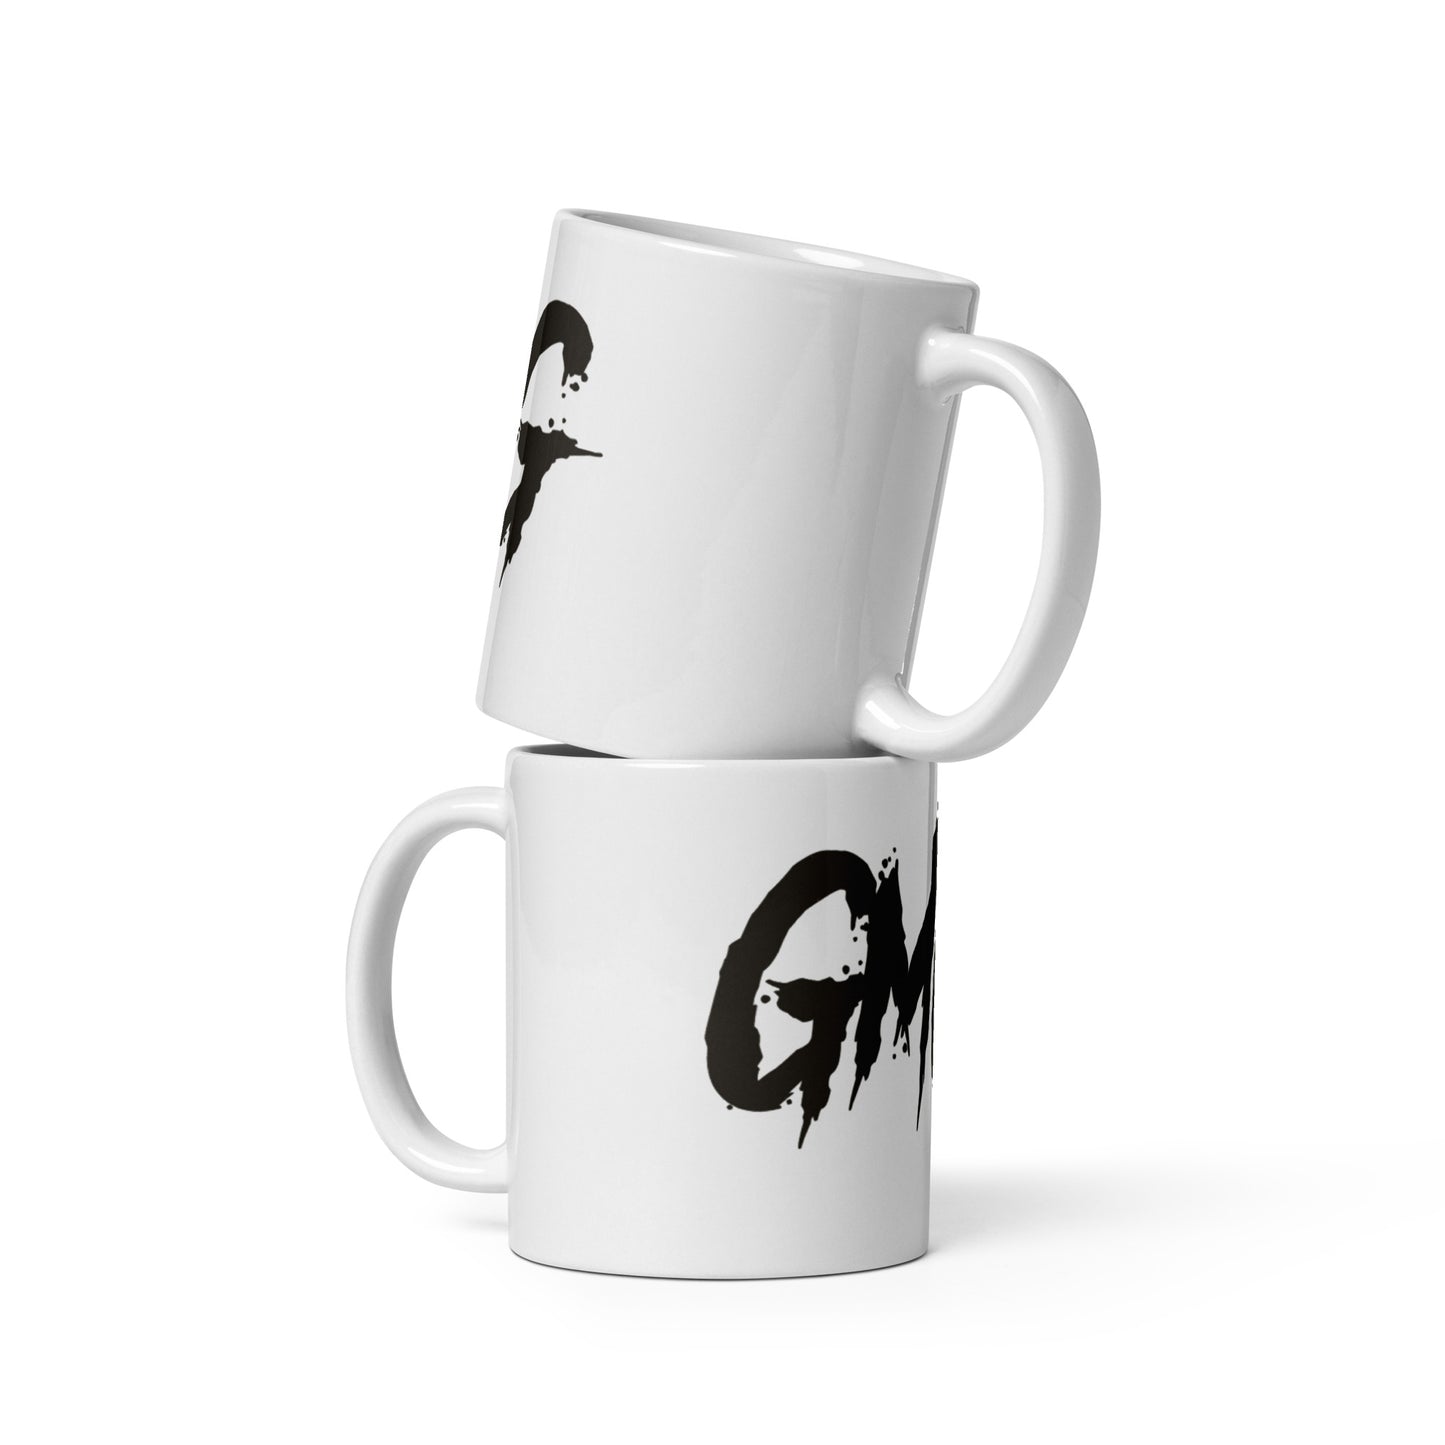 GMGG Coffee Mug